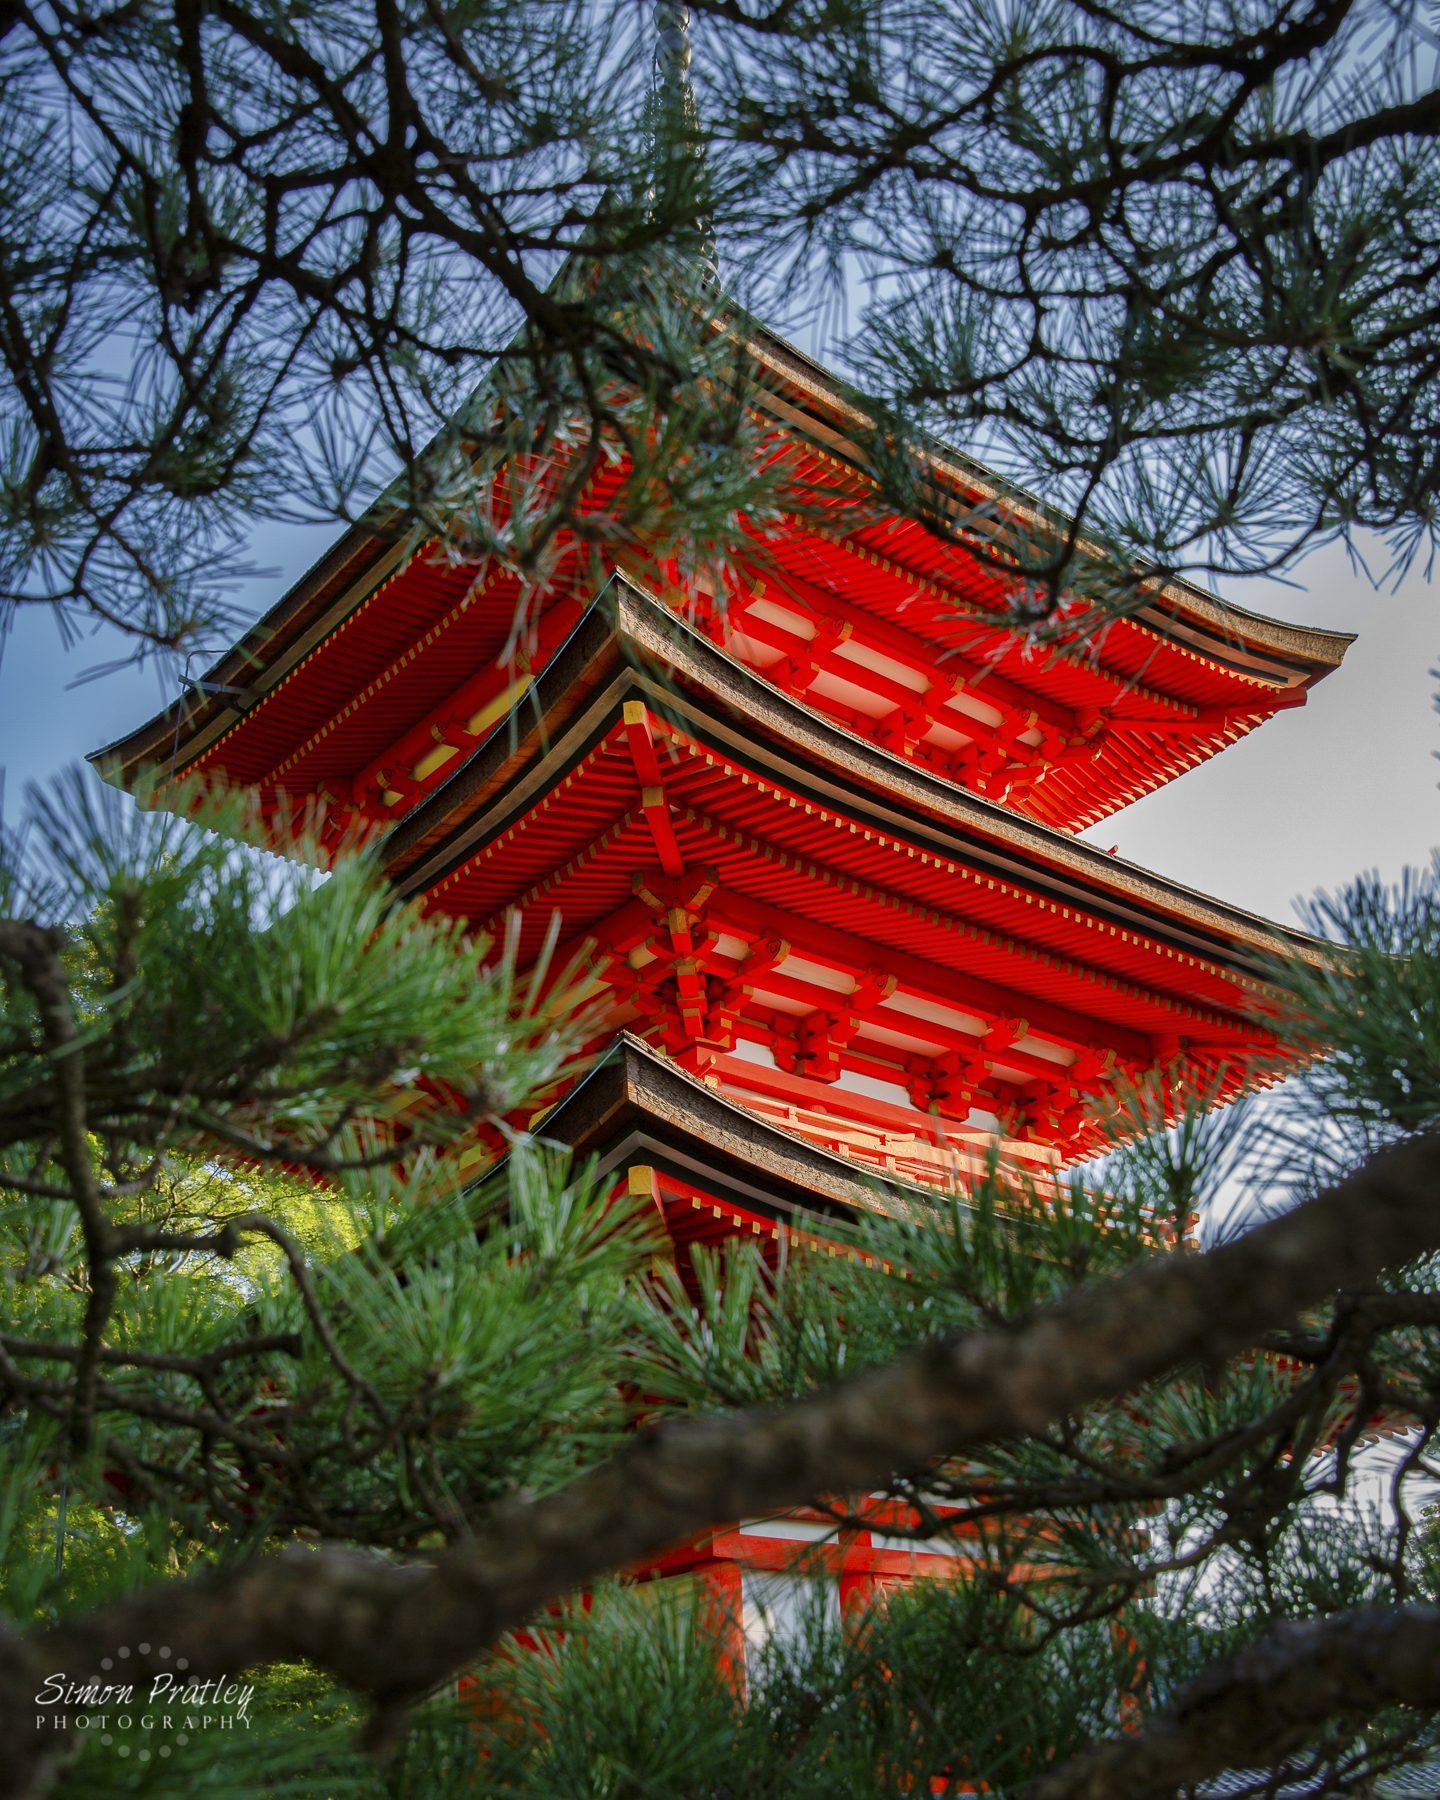 The Koyasu Pagoda